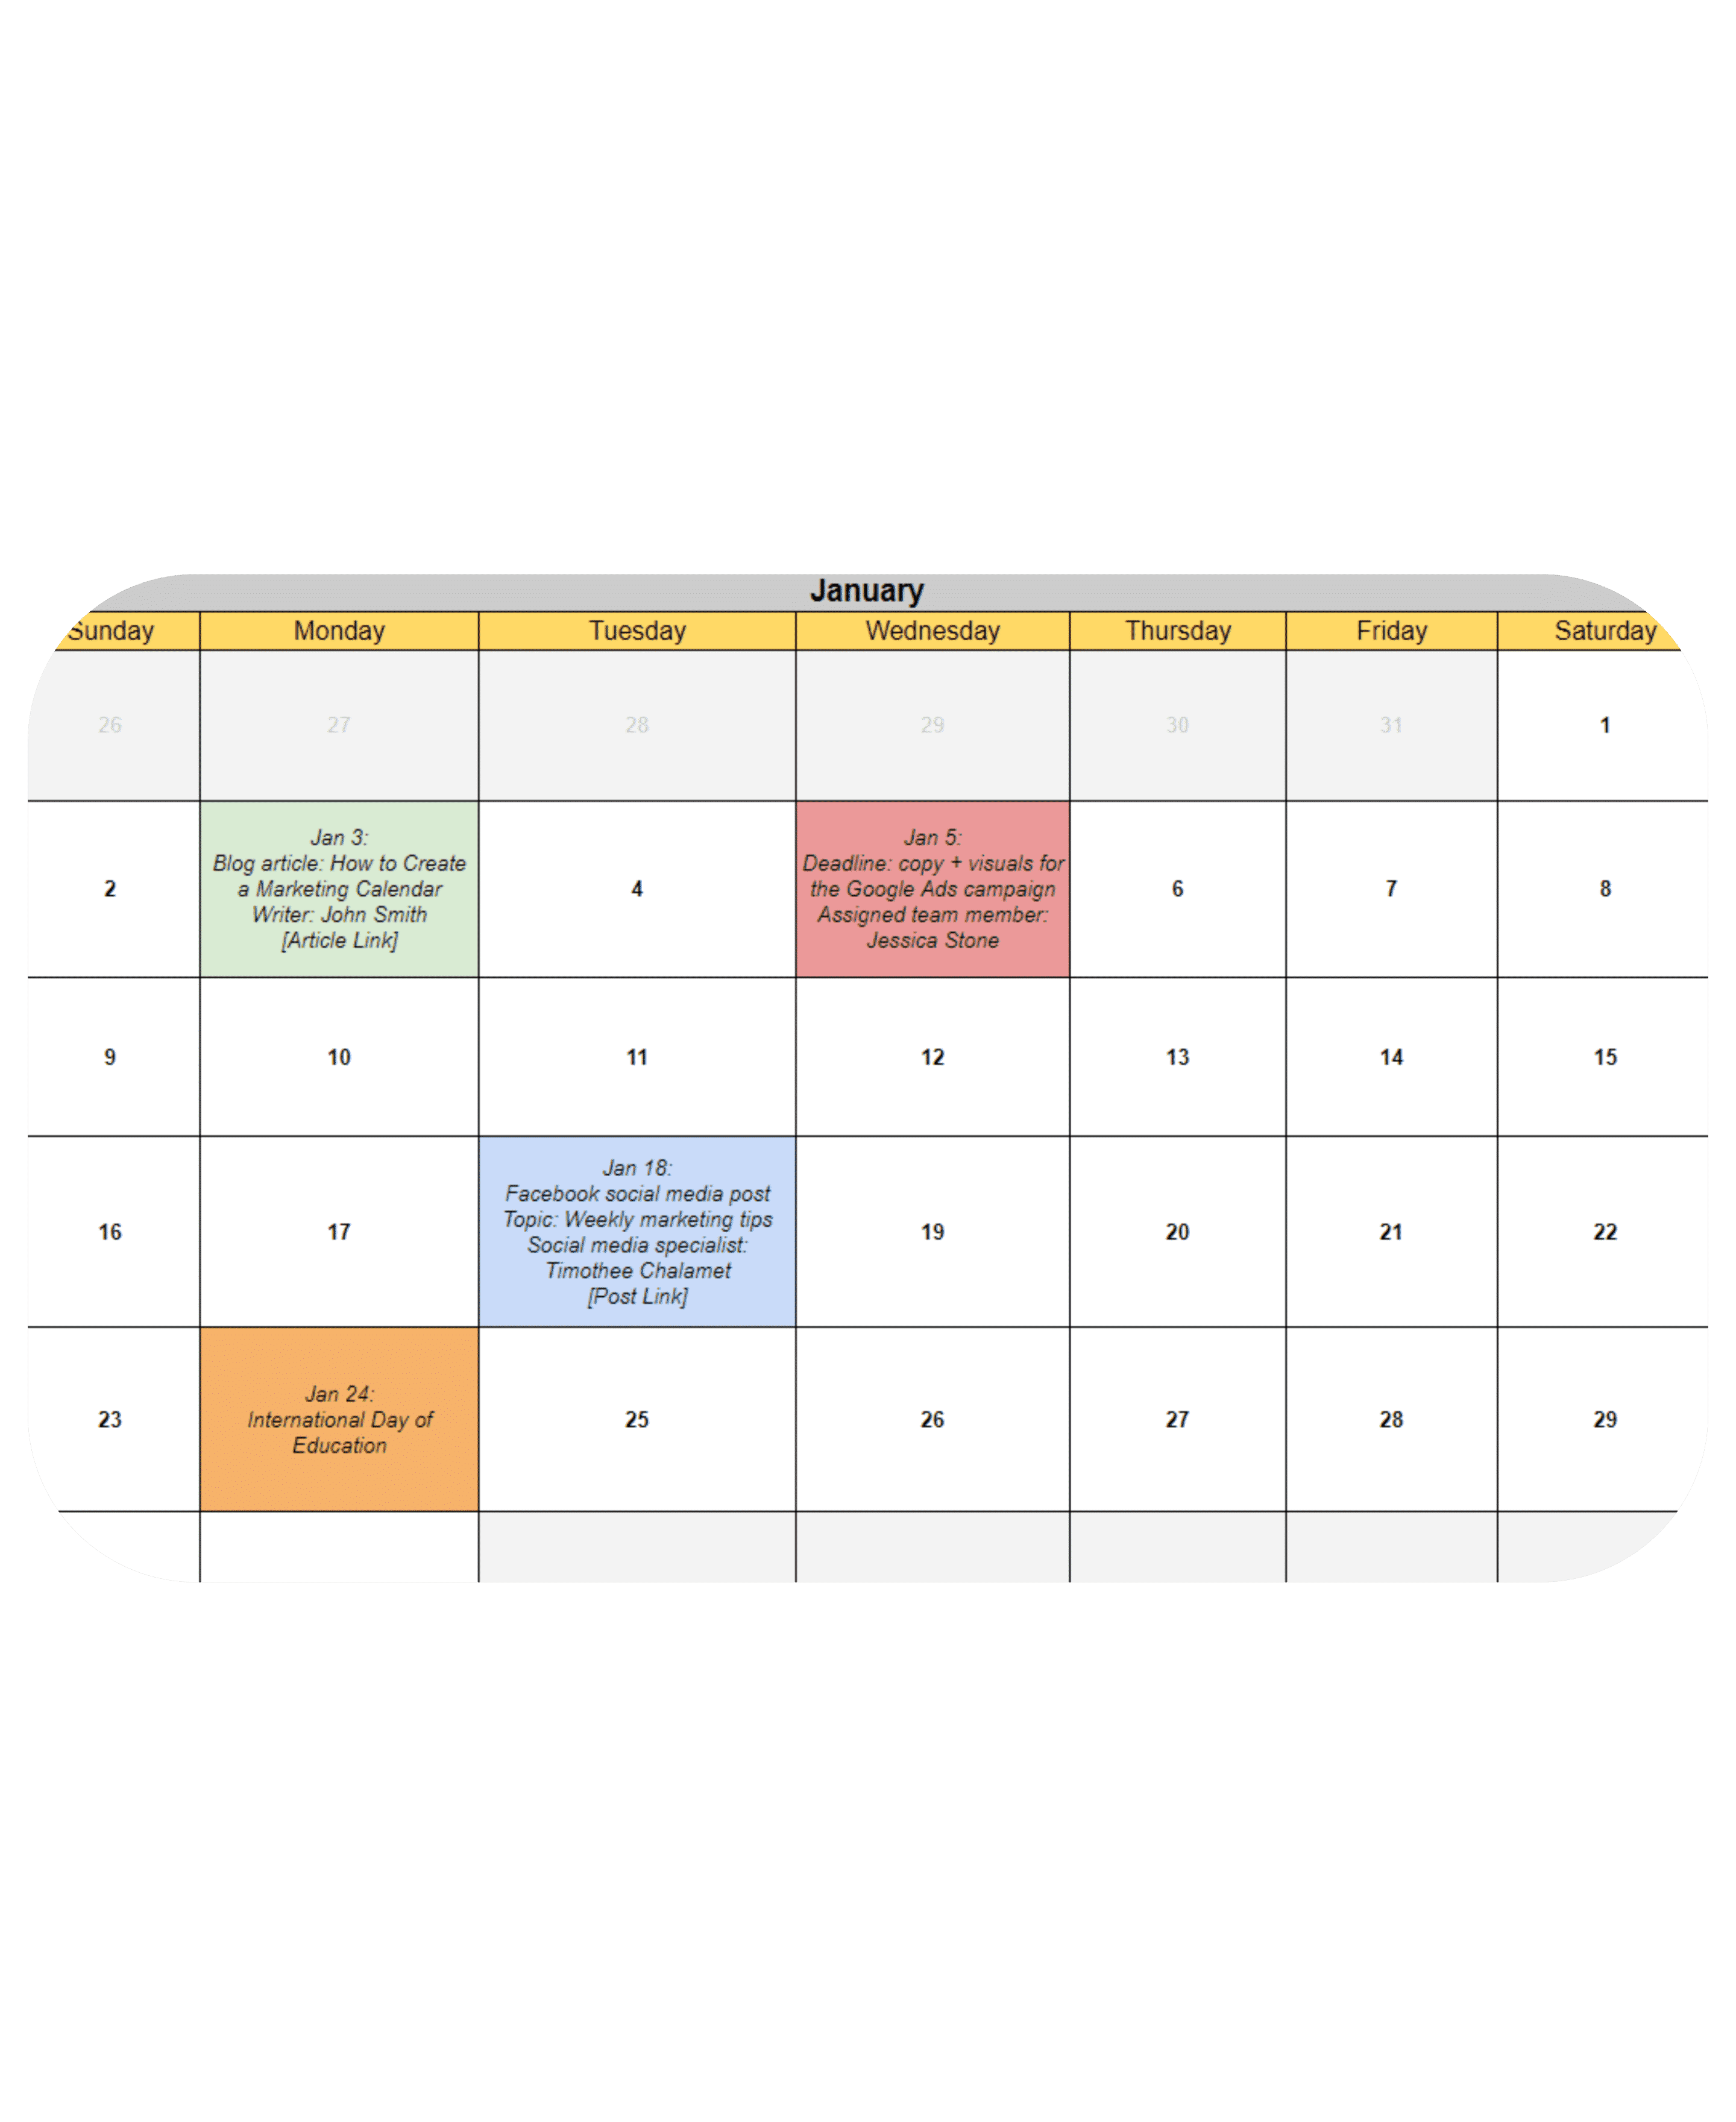 marketing calendar template